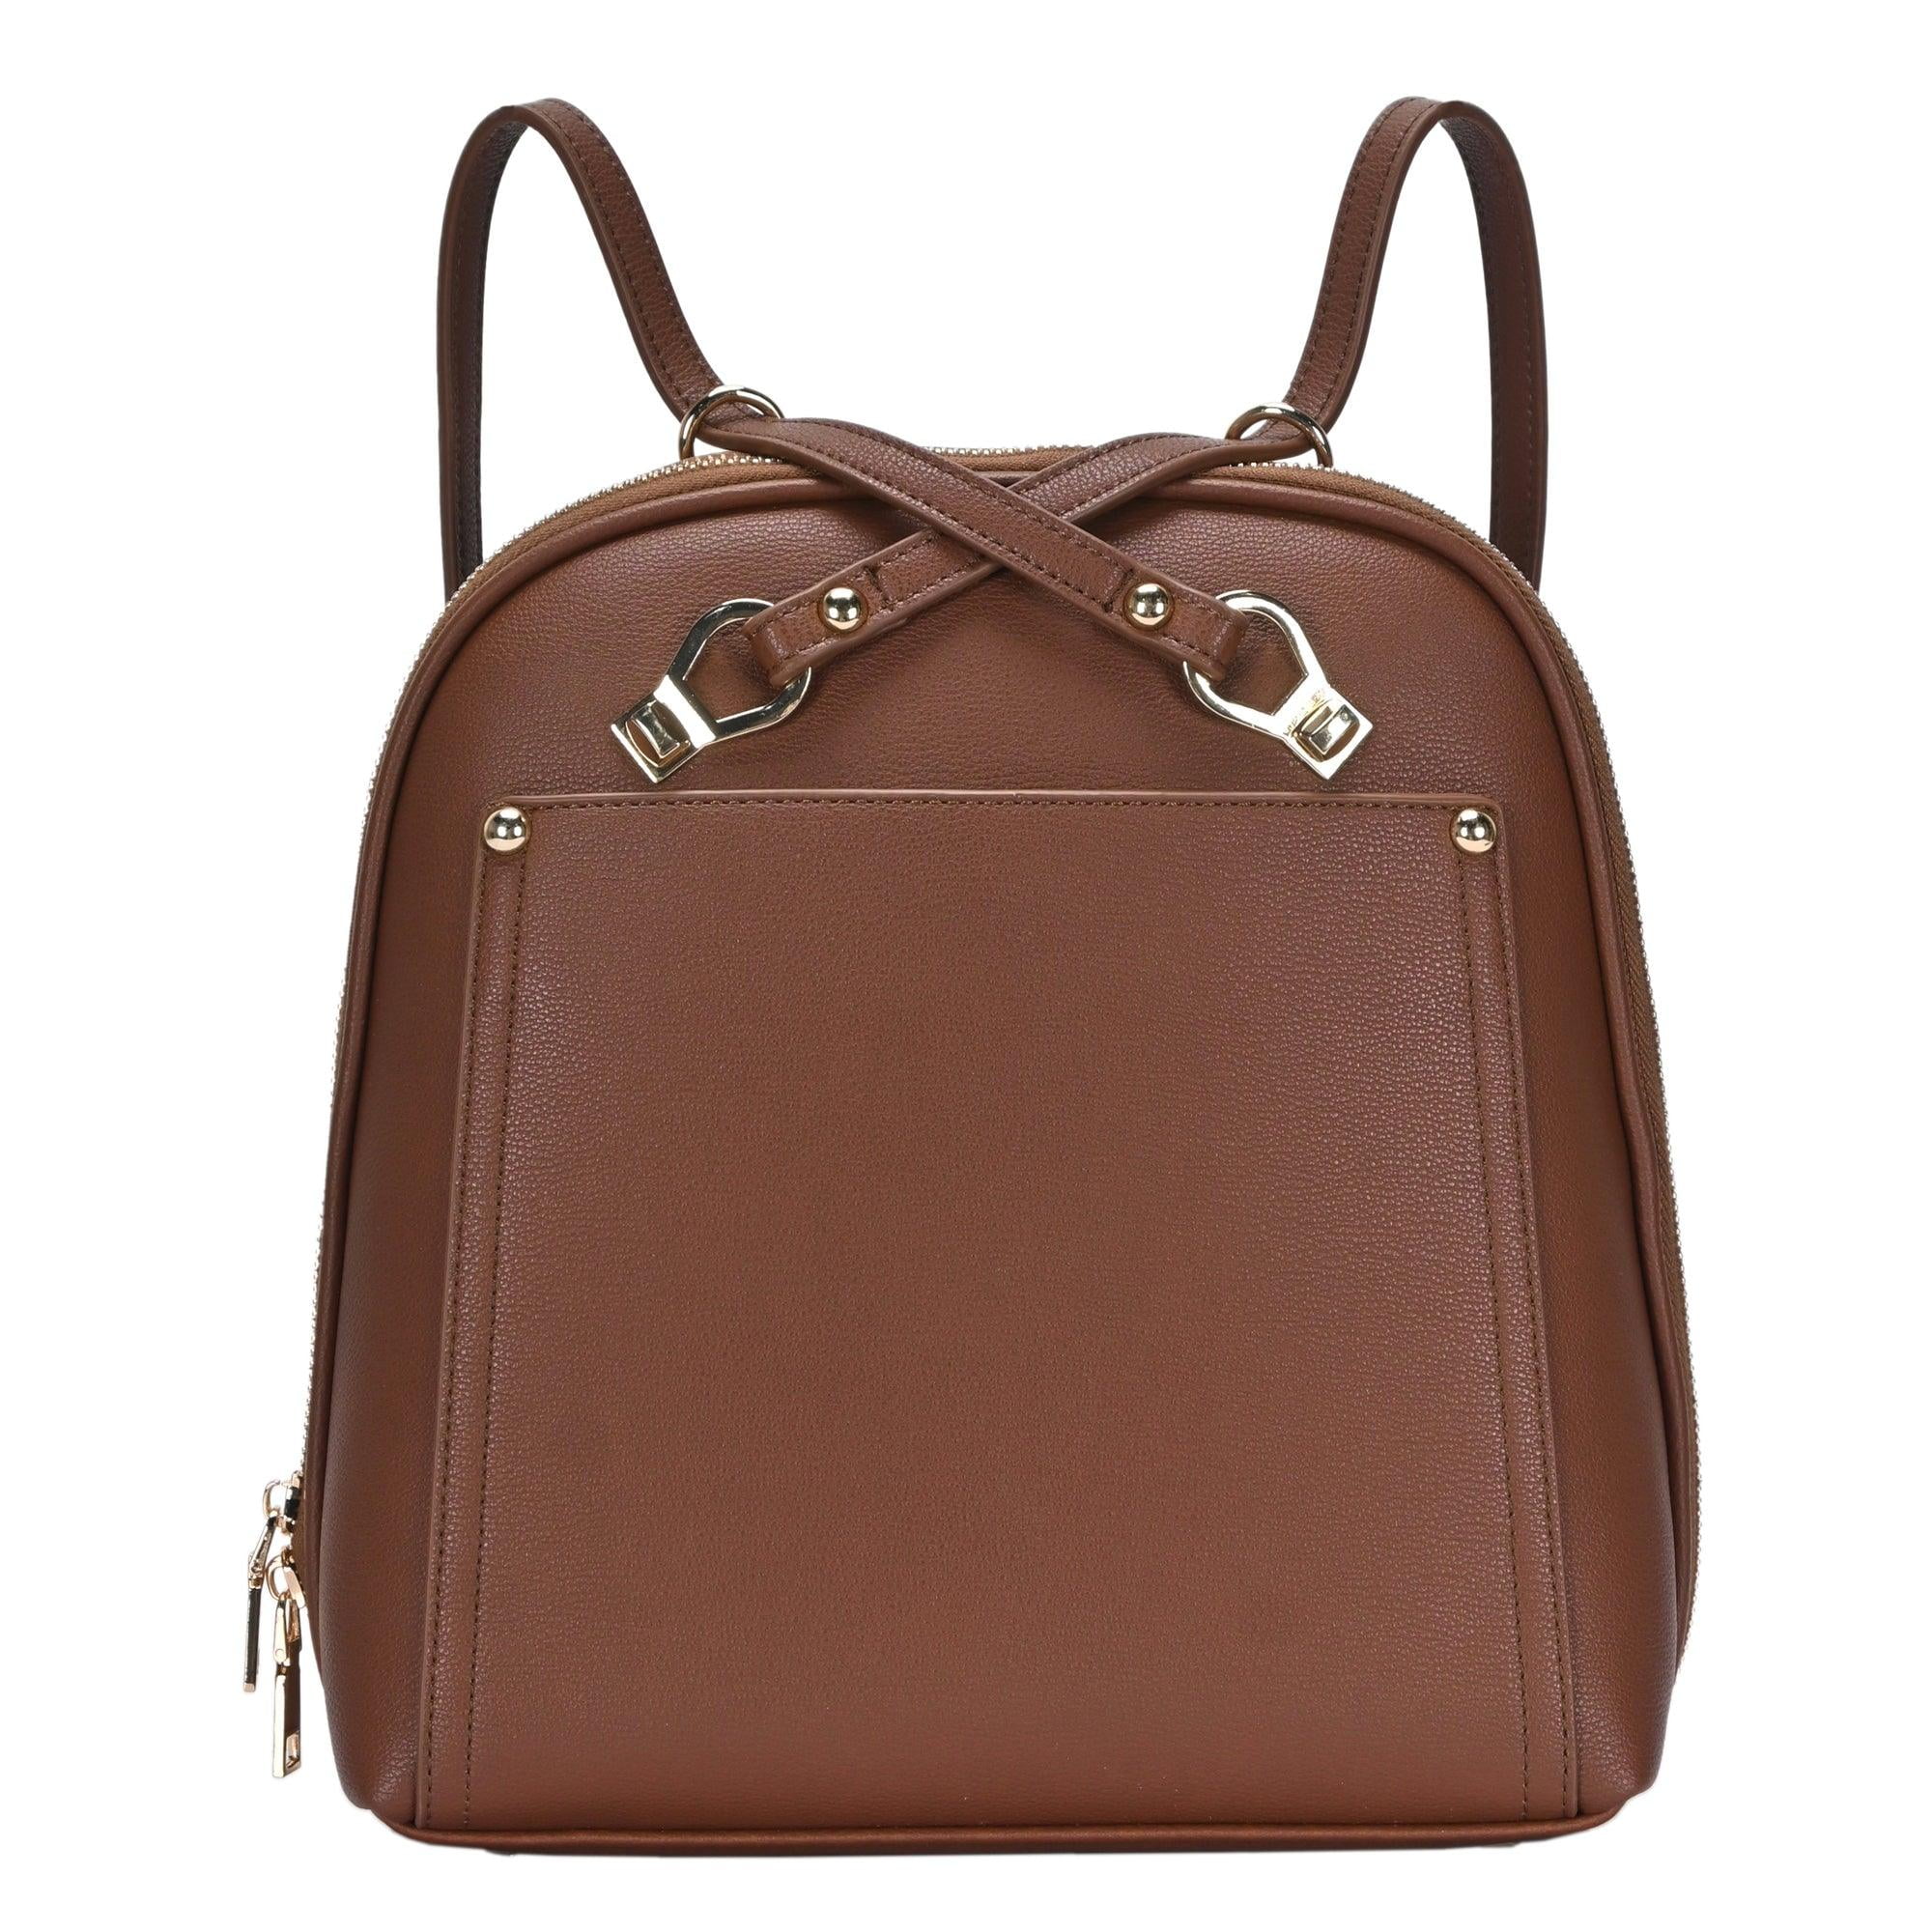 Miztique Vegan Leather Rose Shoulder /Satchel Adjustable Strap Handbag